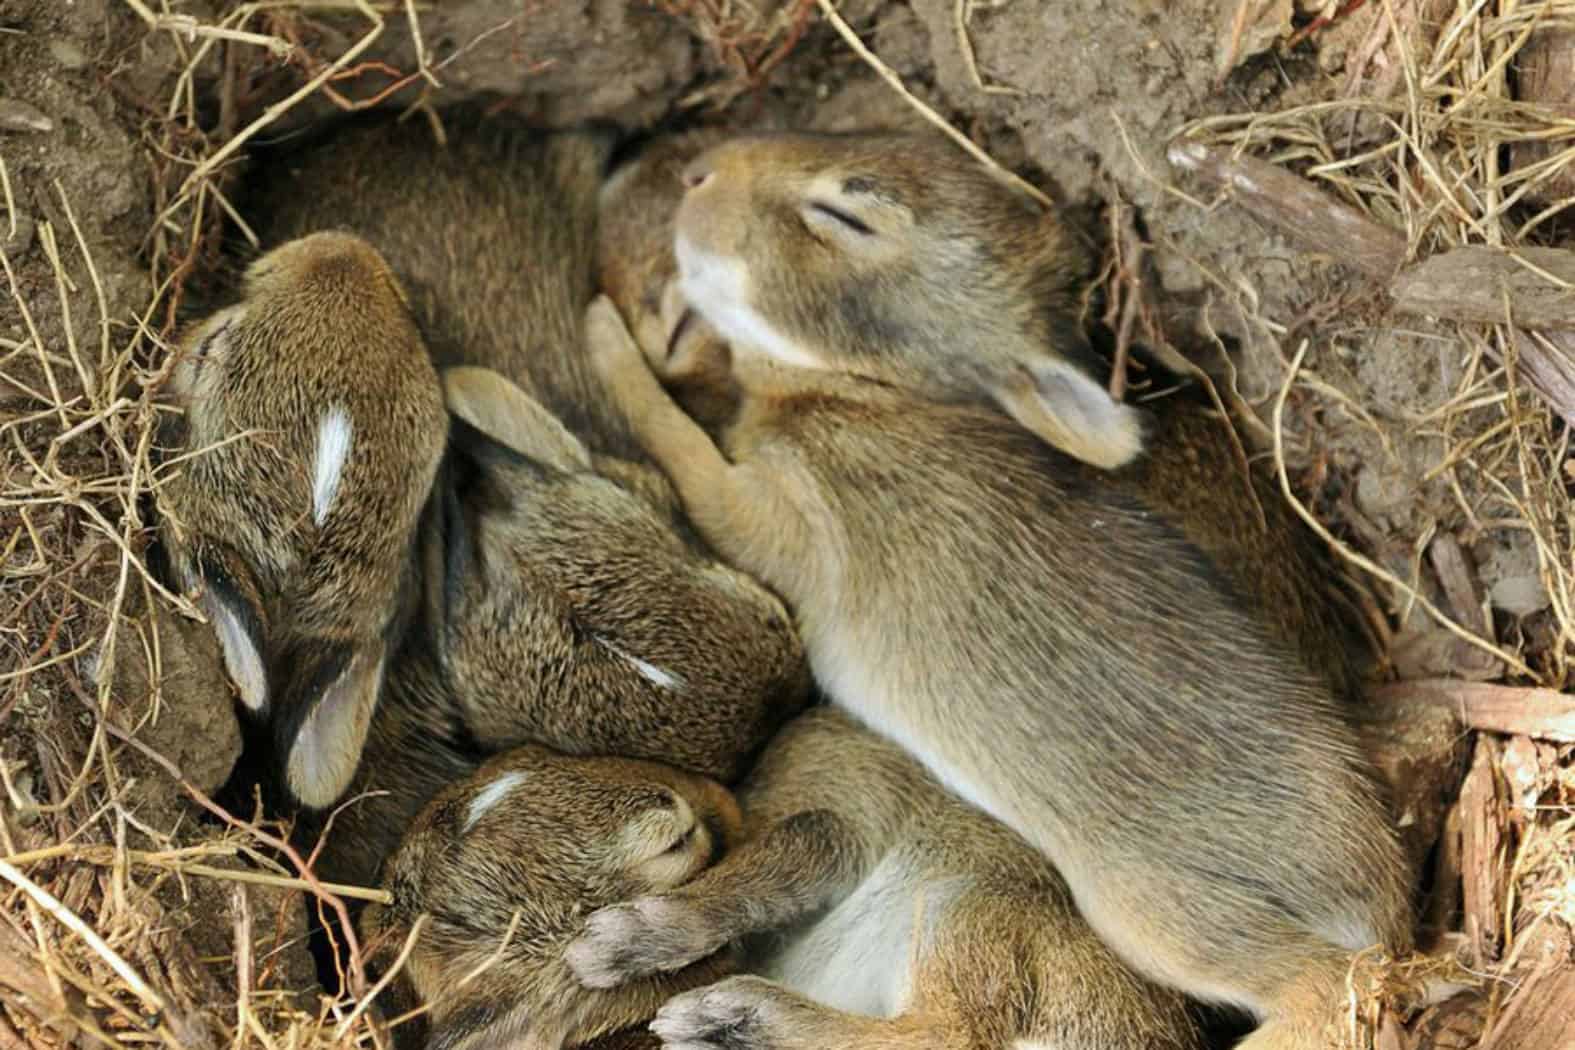 where do bunnies sleep